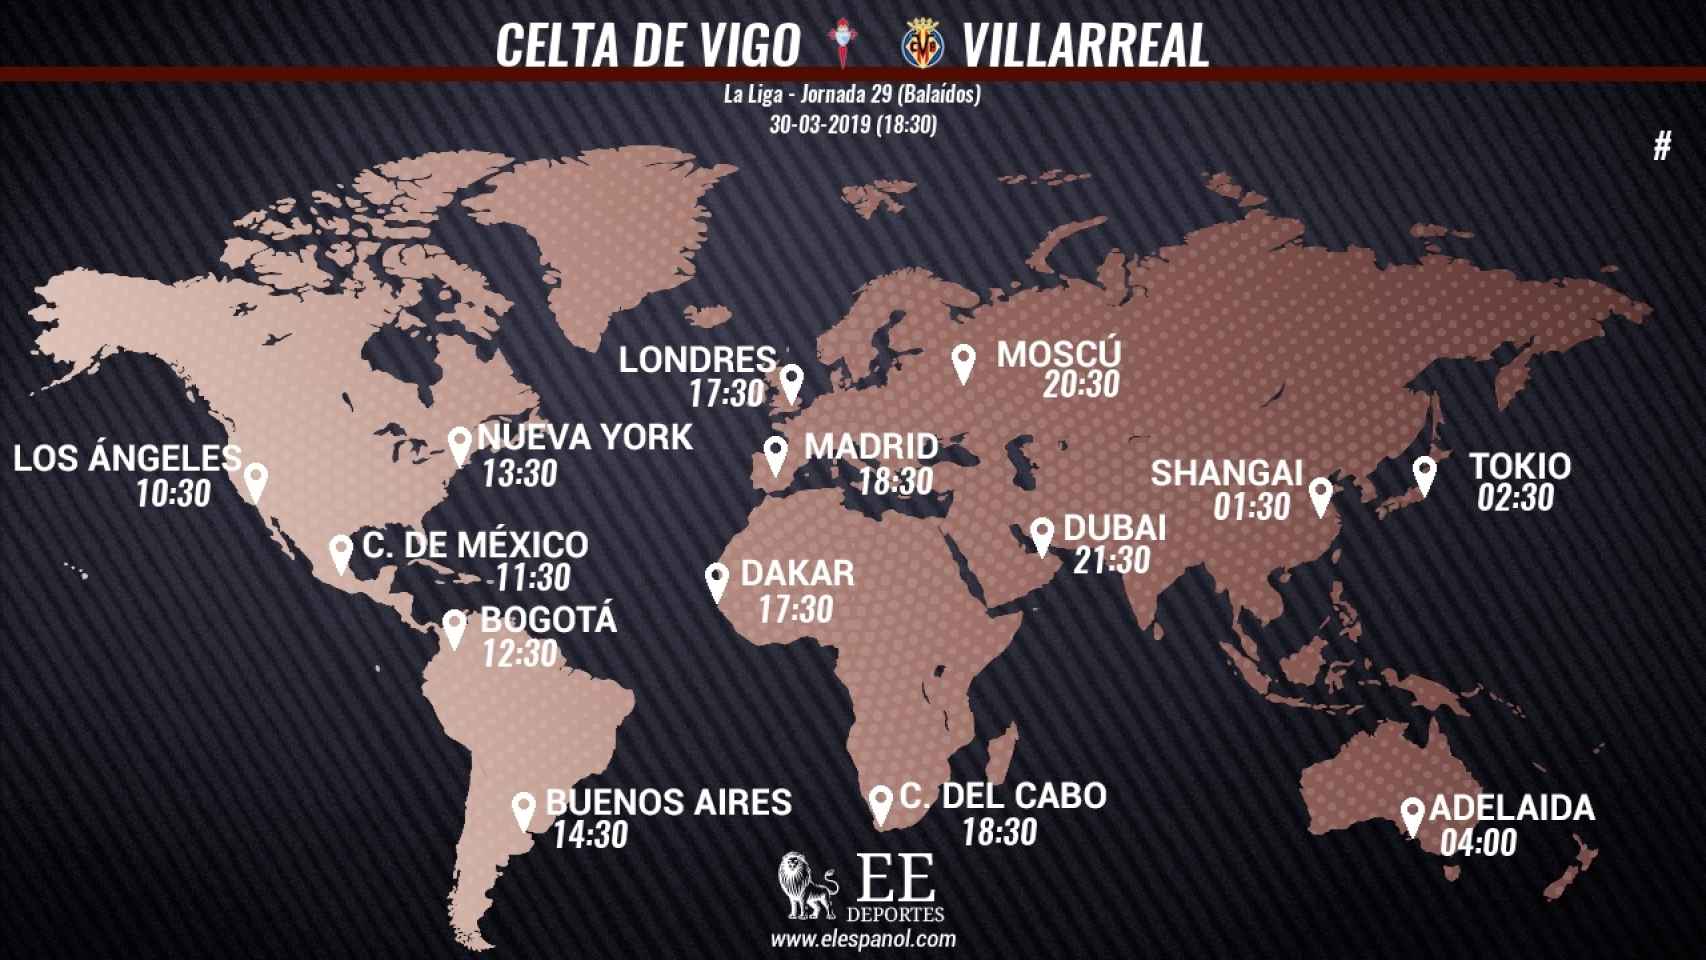 Horario internacional del Celta de Vigo - Villarreal